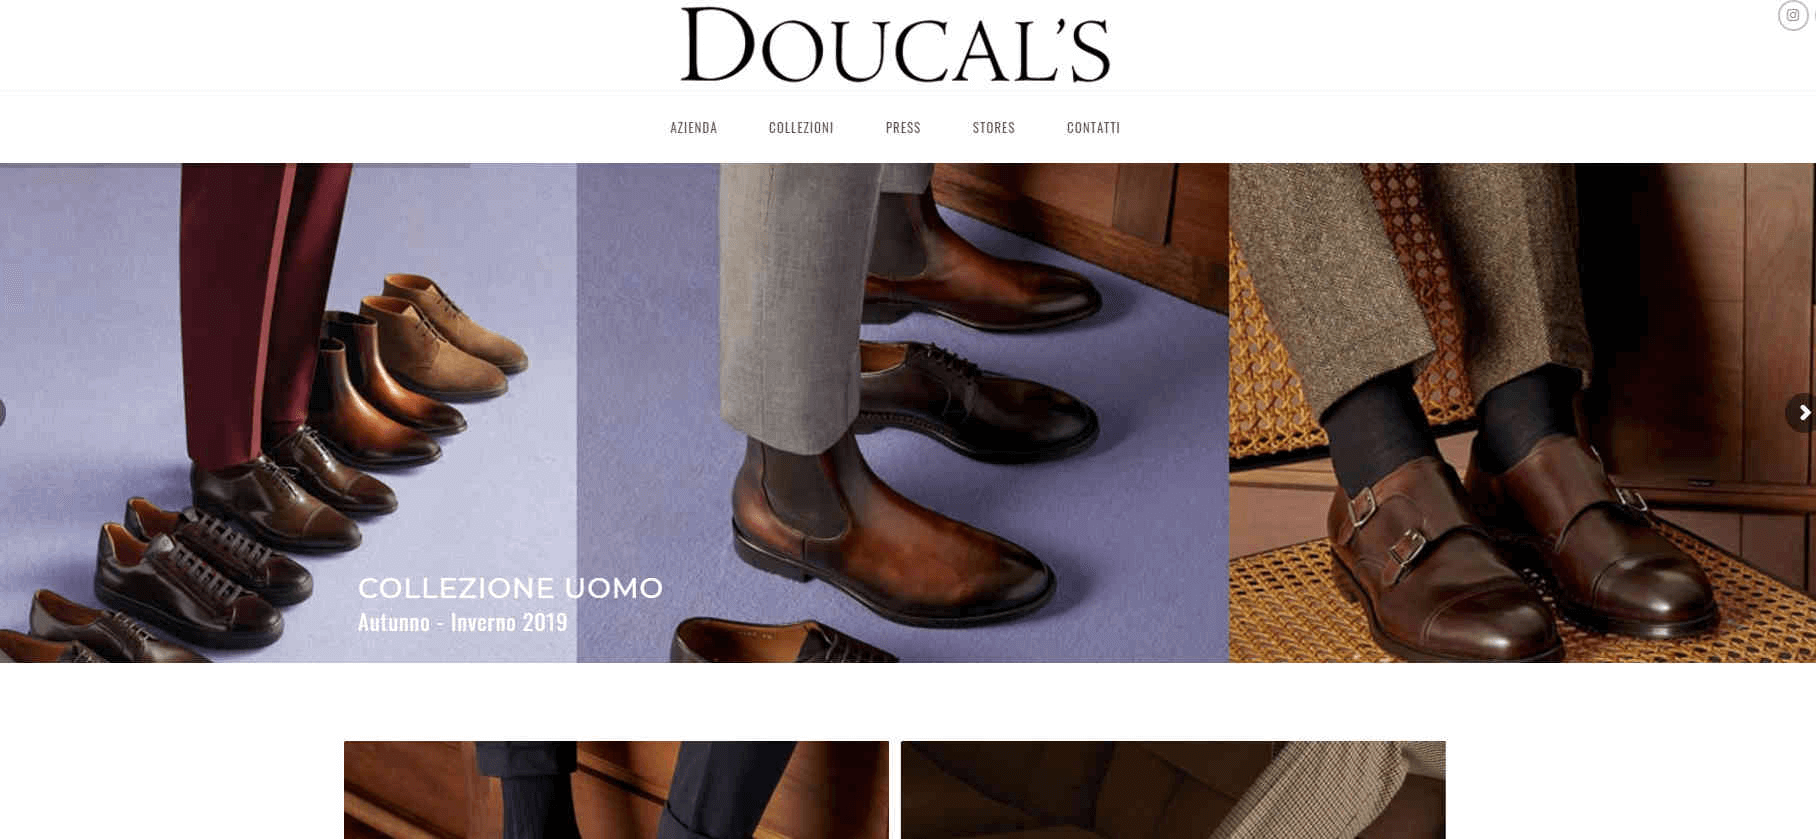 Doucal's官网-意大利鞋履品牌